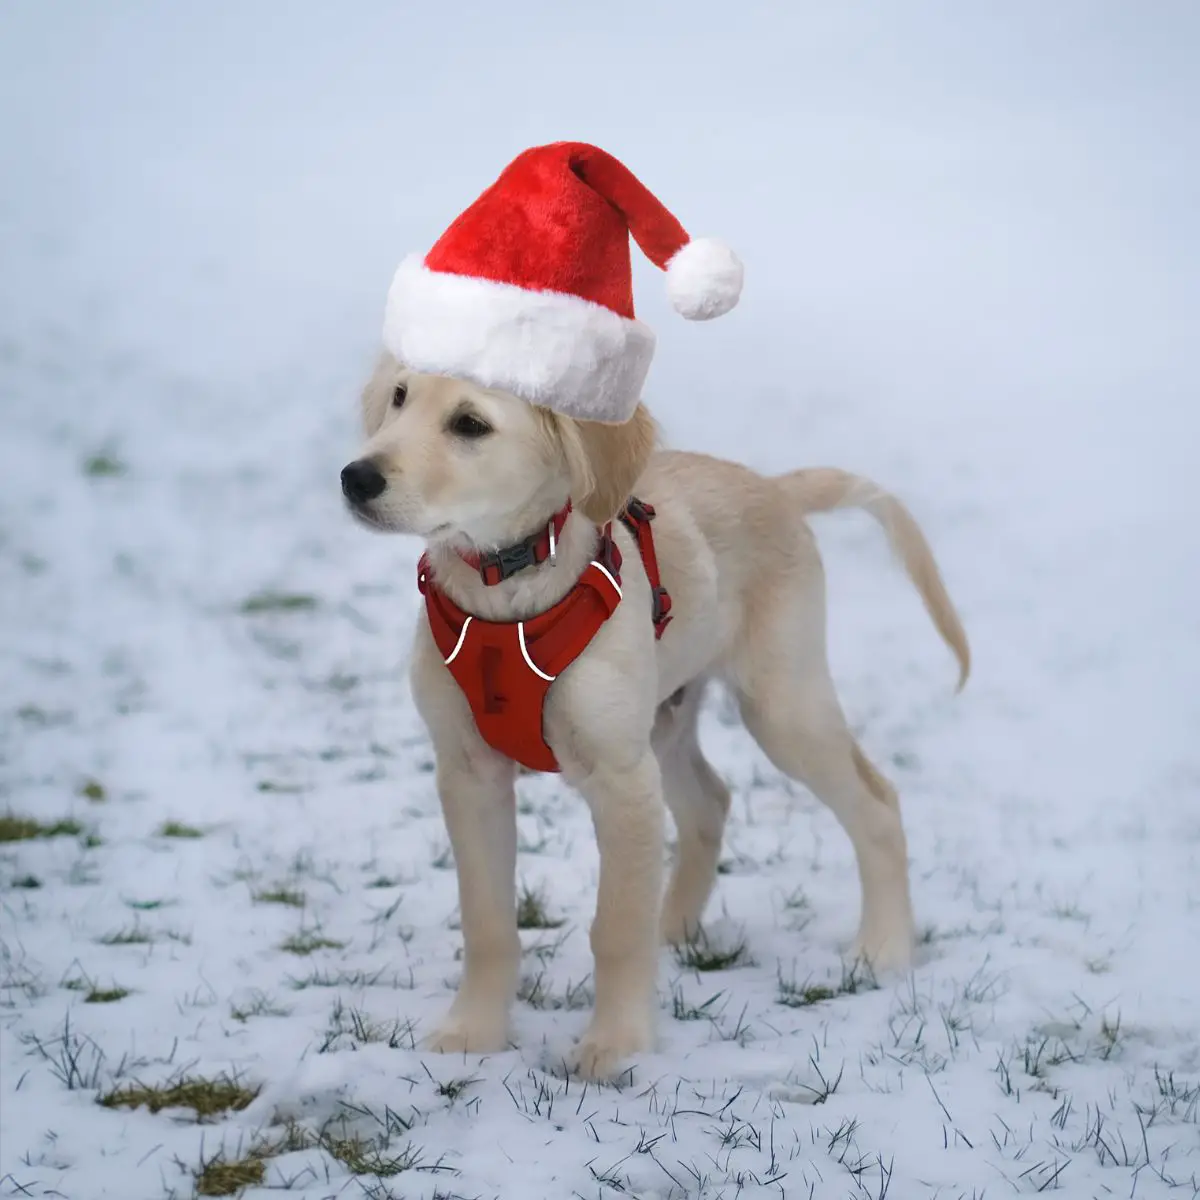 Ausmalbilder Weihnachten Tiere. Labrador-Welpe mit roten Geschirr und Weihnachtsmütze.